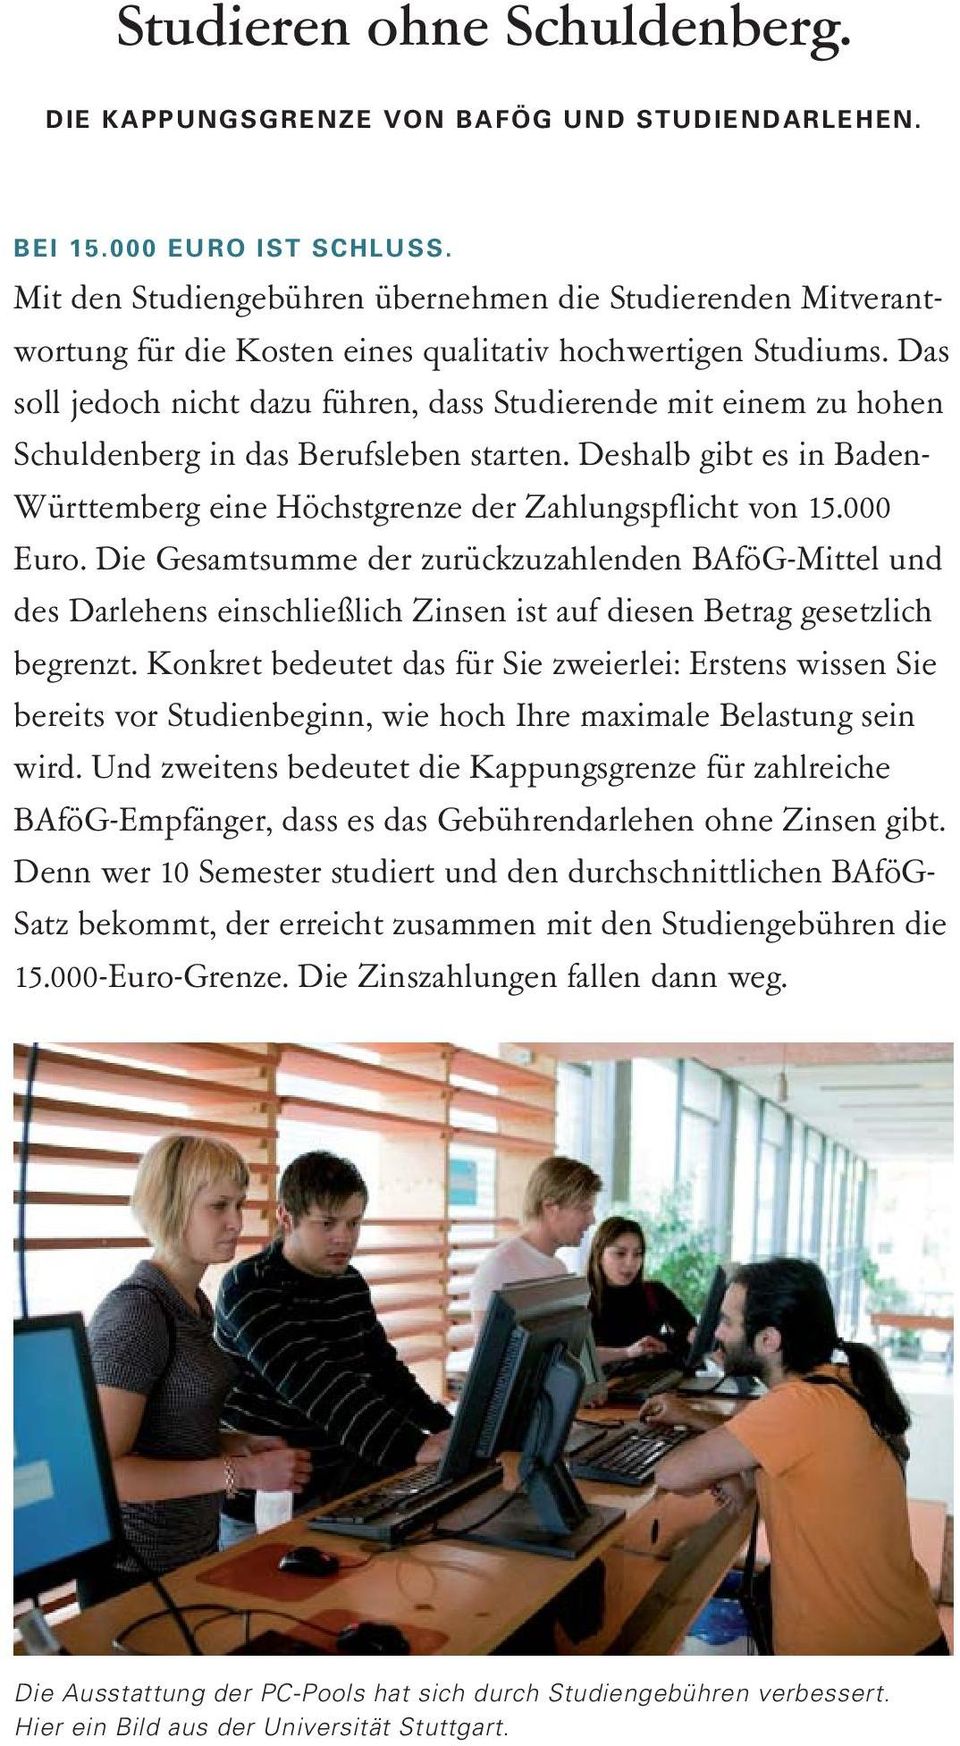 Das soll jedoch nicht dazu führen, dass Studierende mit einem zu hohen Schuldenberg in das Berufsleben starten. Deshalb gibt es in Baden- Württemberg eine Höchstgrenze der Zahlungspflicht von 15.